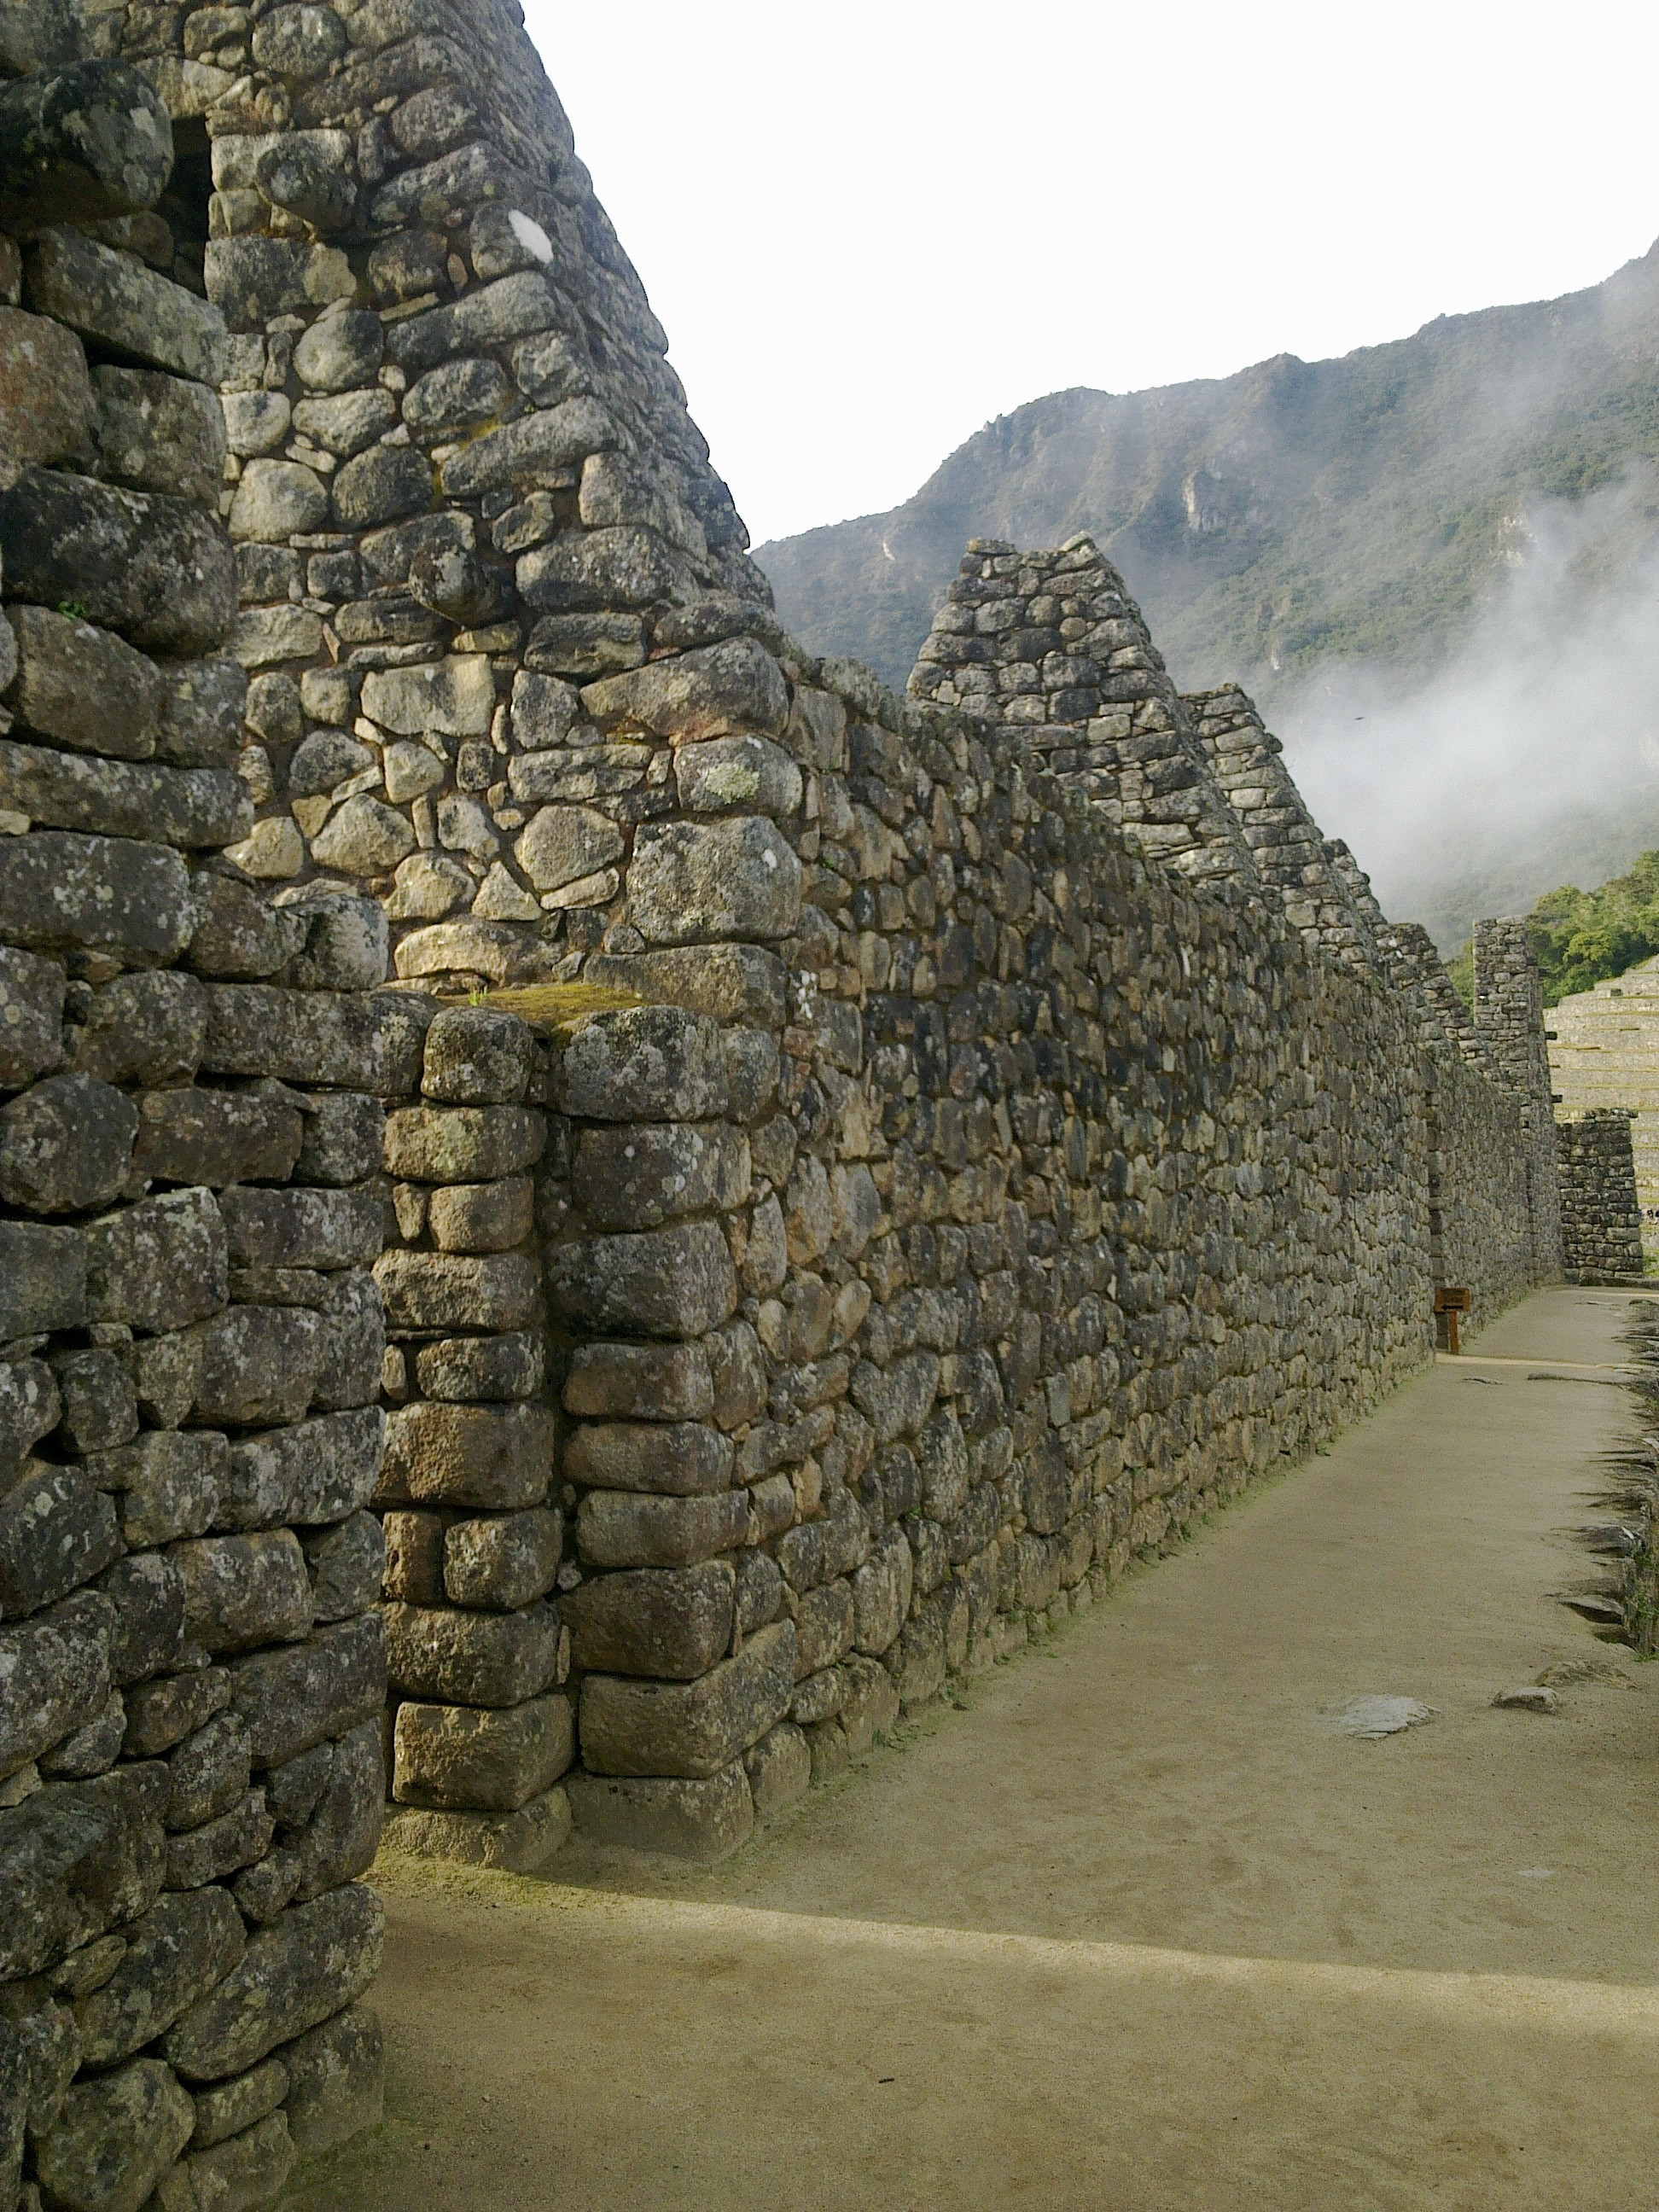 Machu Picchu in fog (Peru)